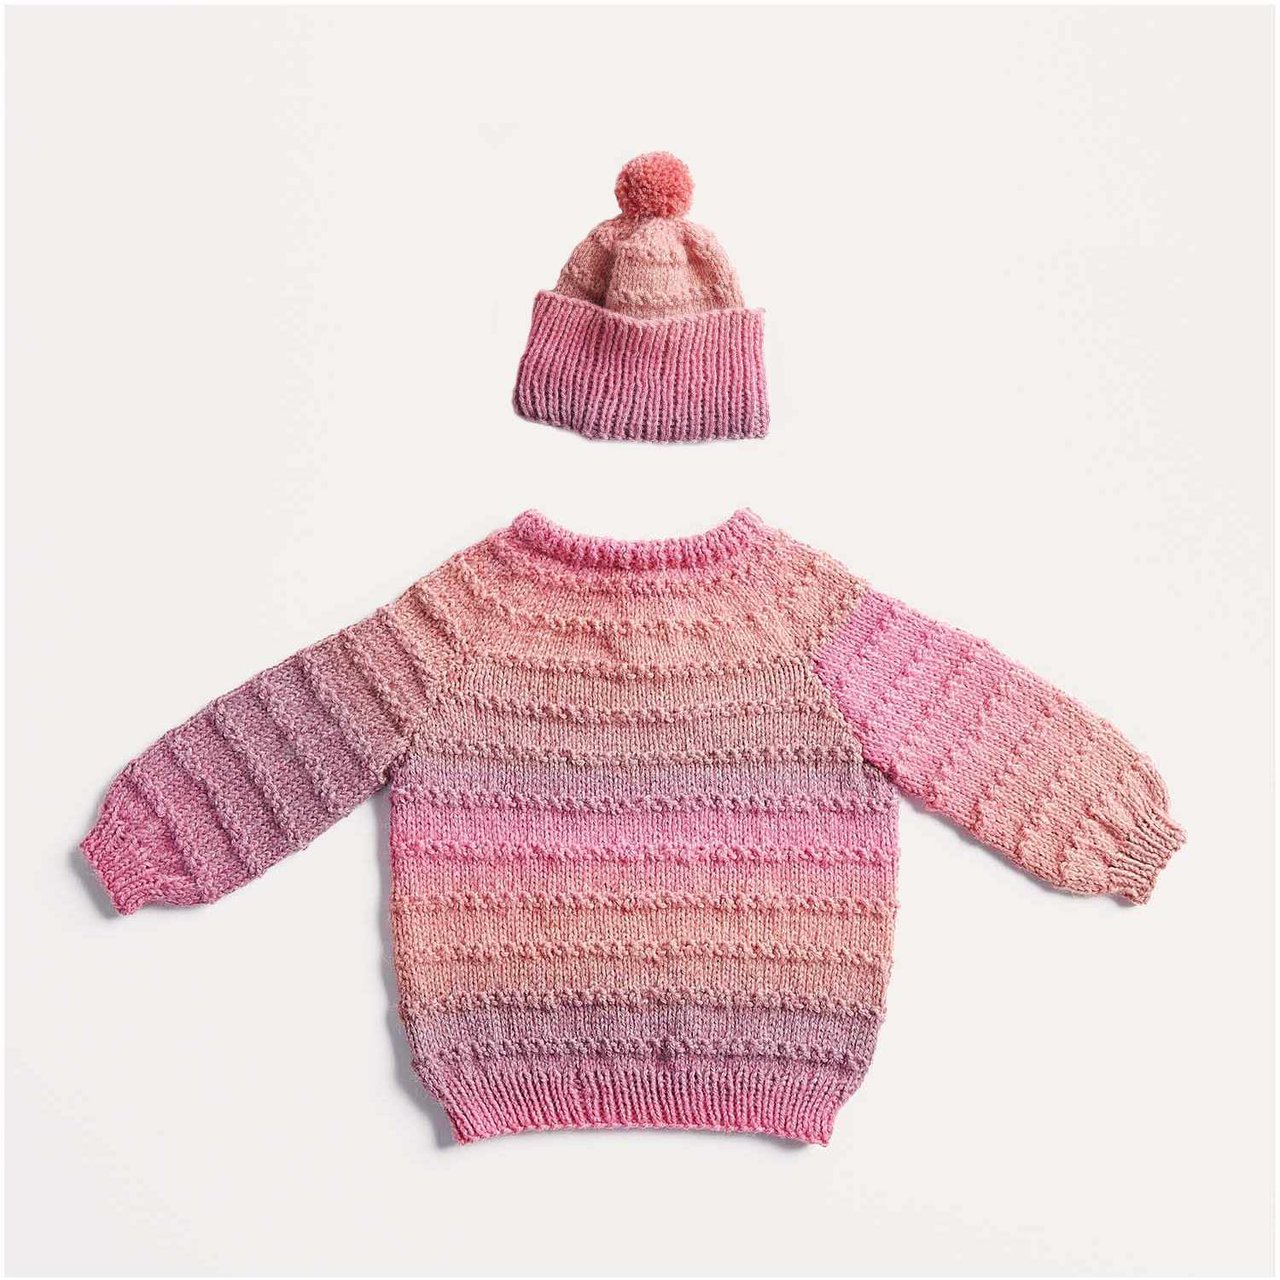 Strickset Pullover und Mütze Modell 10/11 aus Baby Nr. 35 56/62